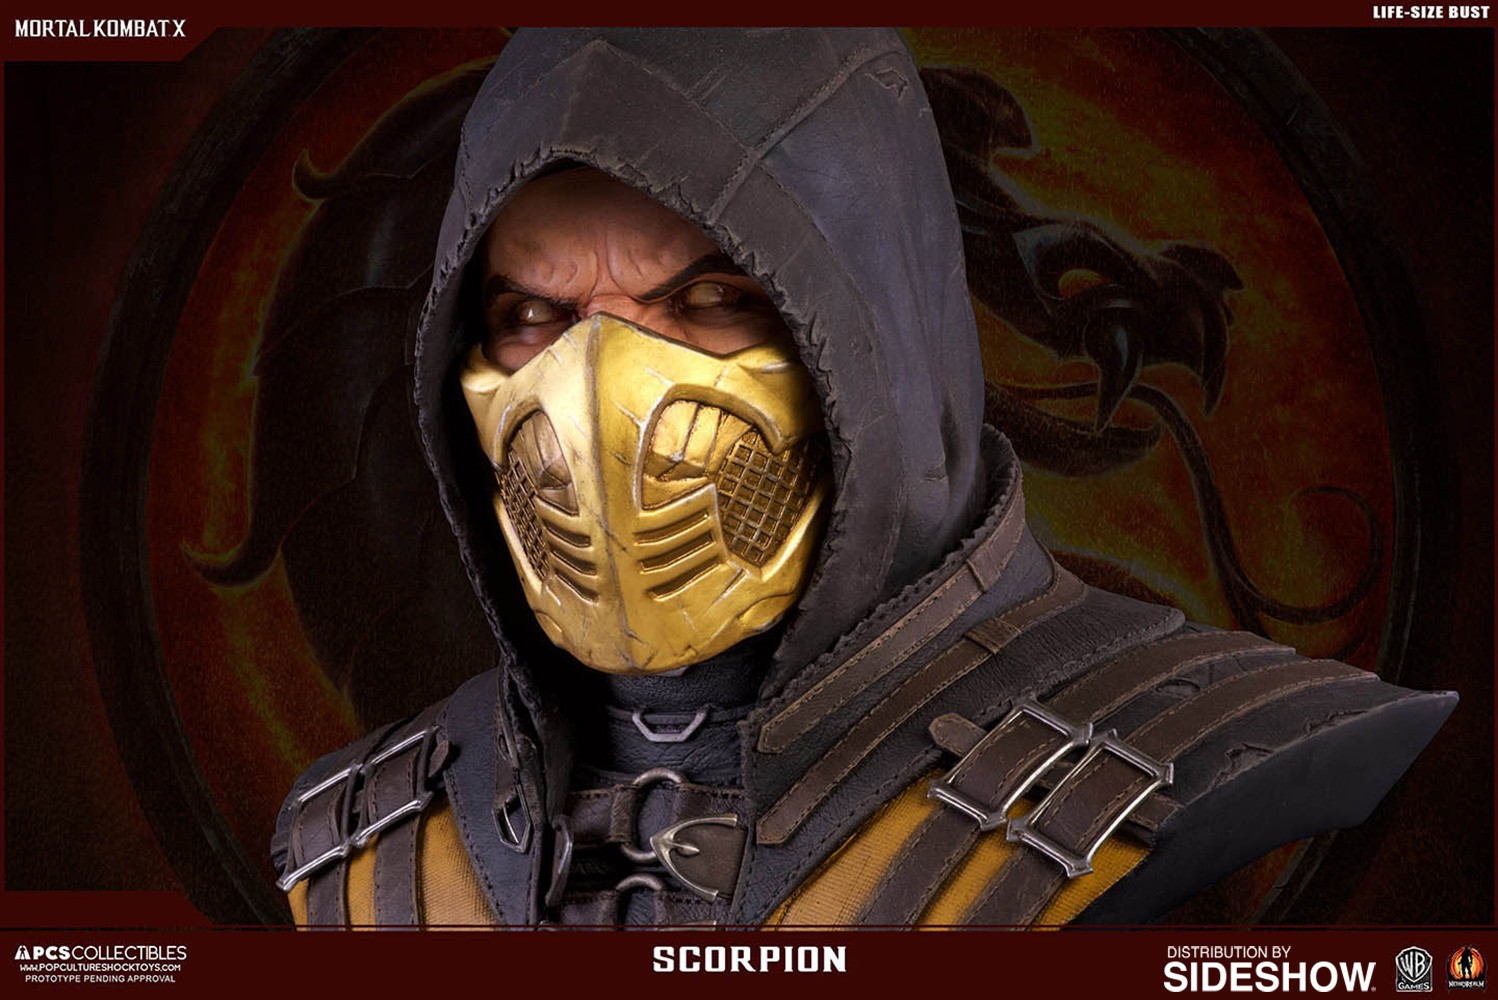 Scorpion (Prototype Shown) View 6